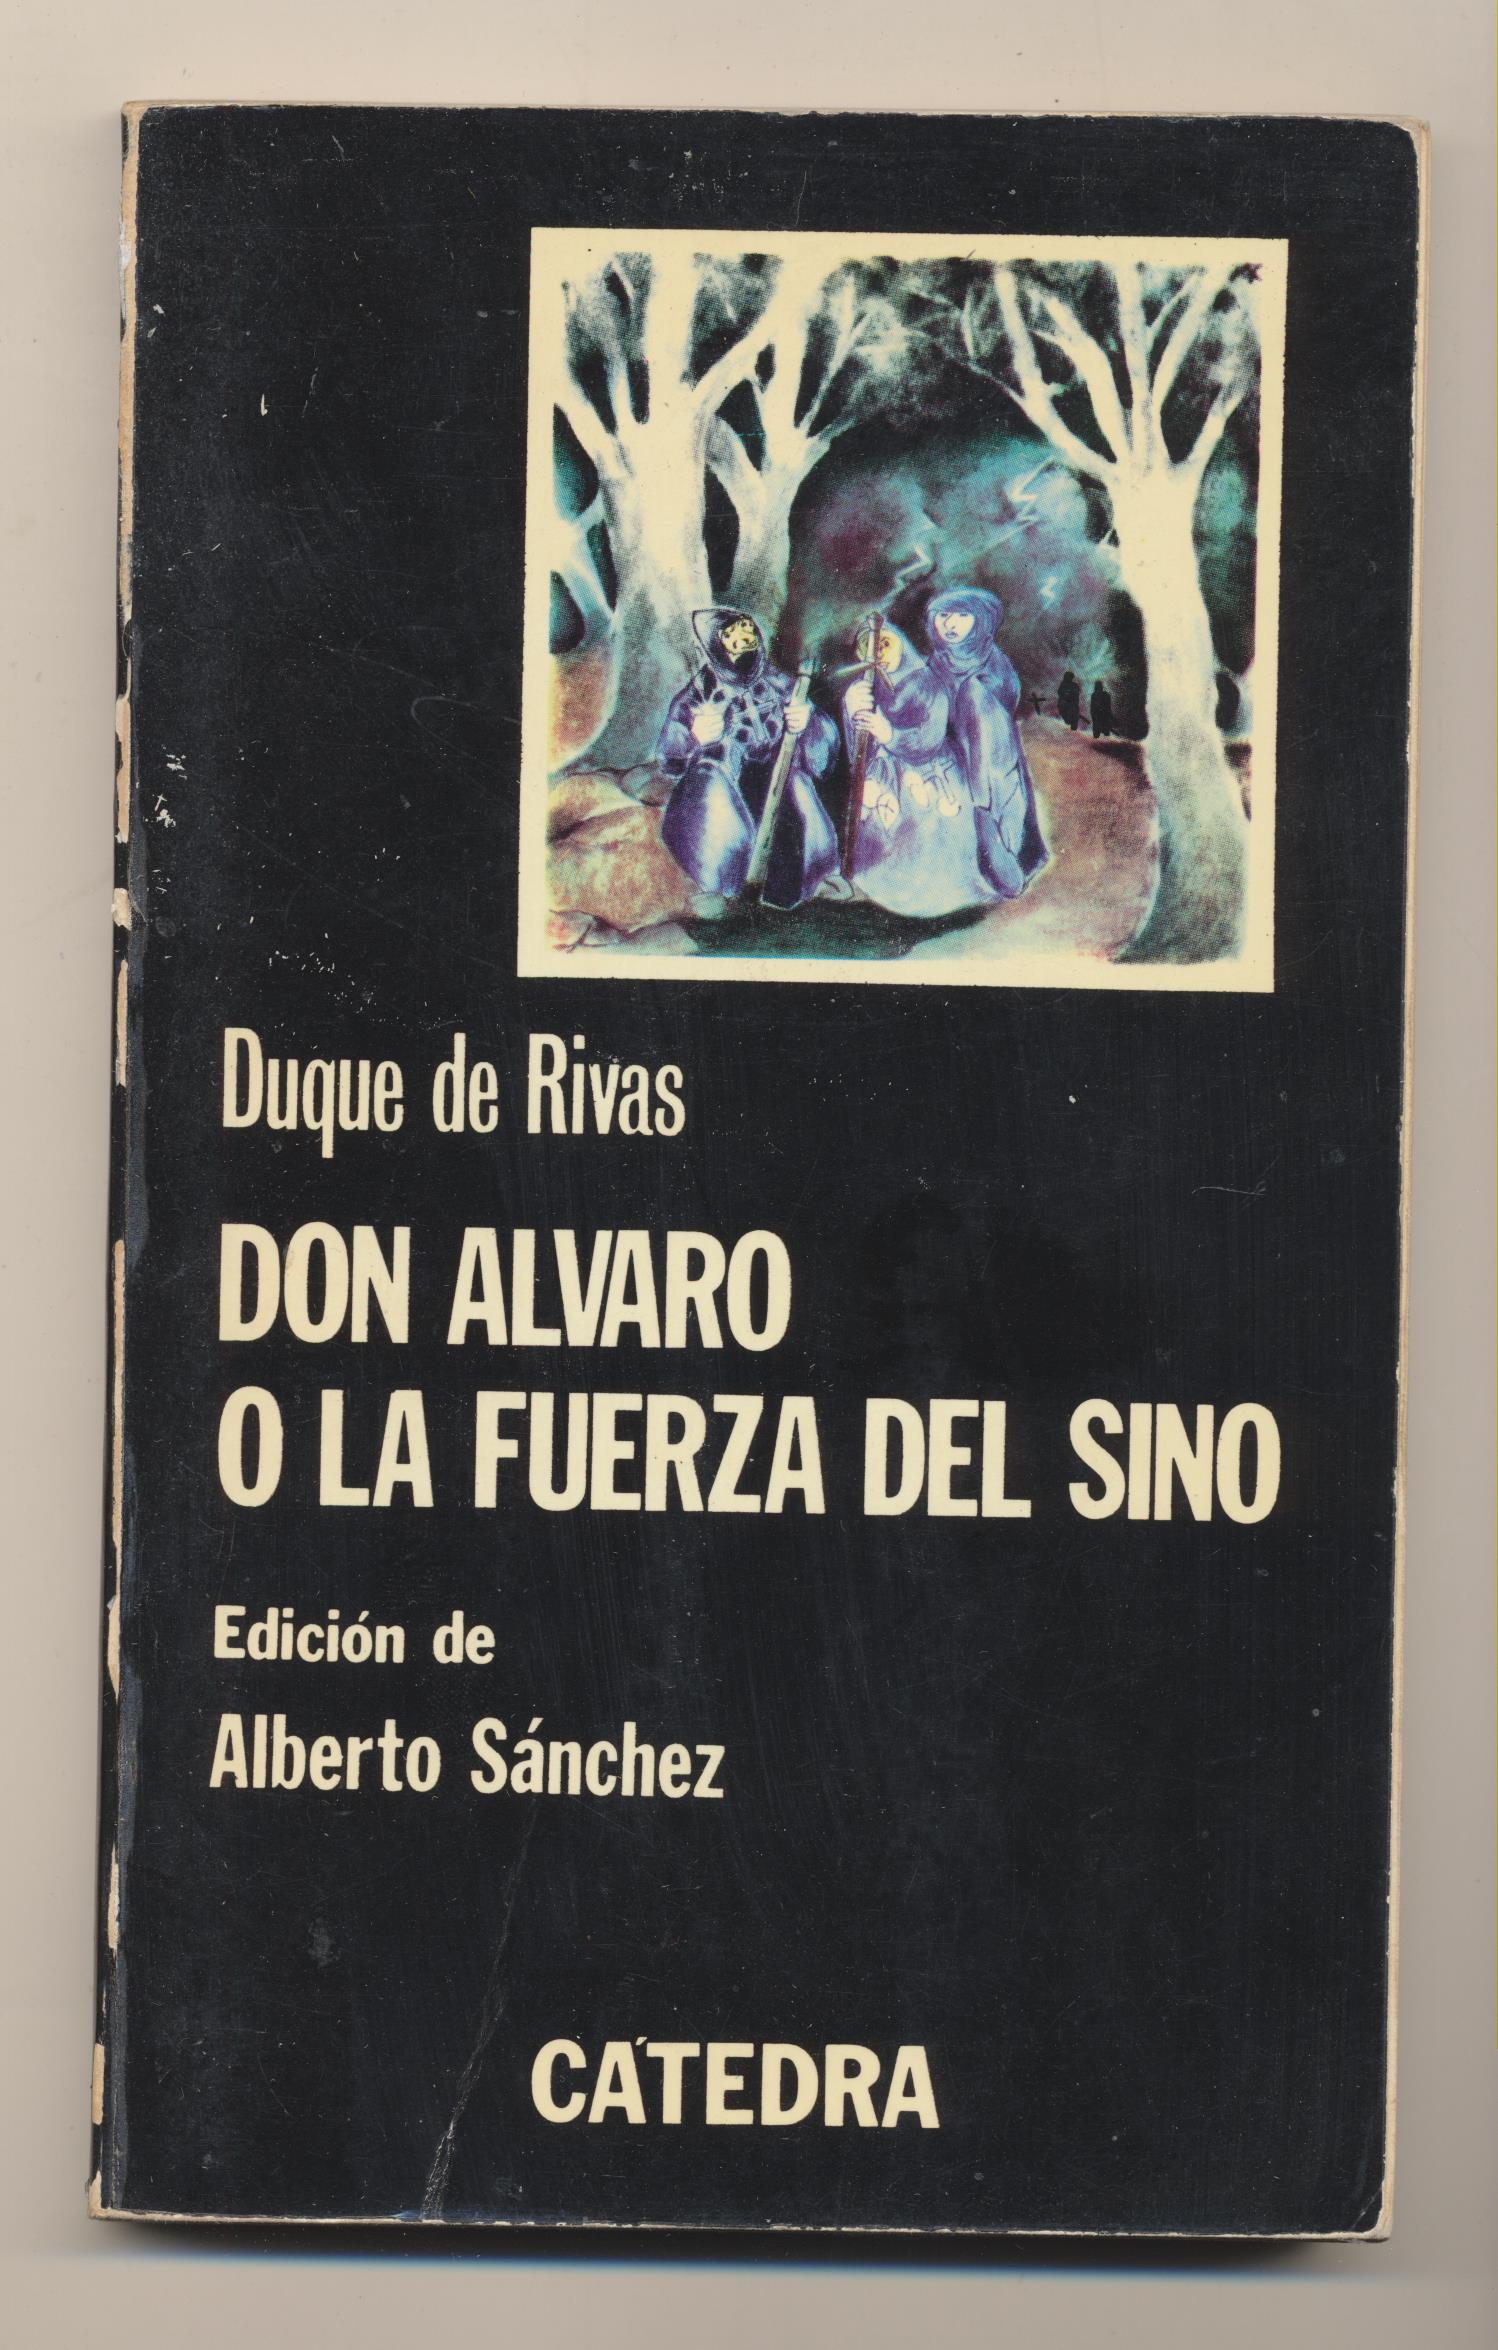 Duque de Rivas. Don Álvaro o la fuerza del Sino. Catedra 1979